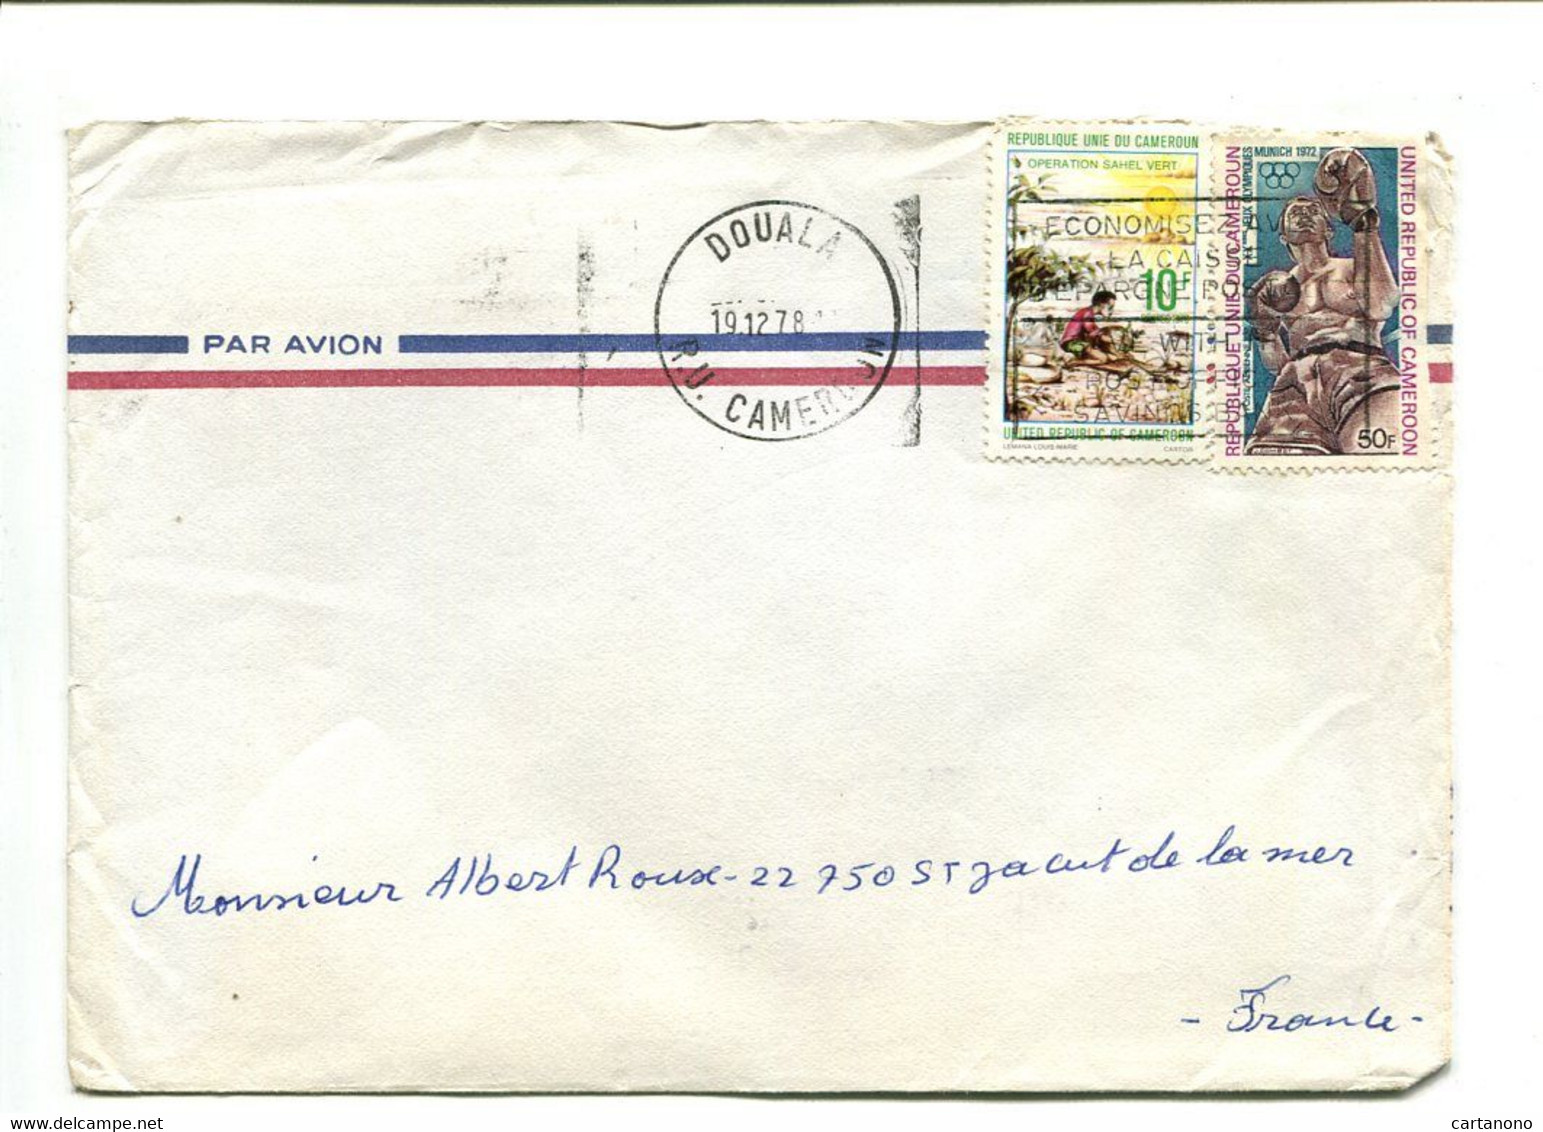 CAMEROUN Yaounde 1979 - Affranchissement Sur Lettre Par Avion - - Cameroon (1960-...)